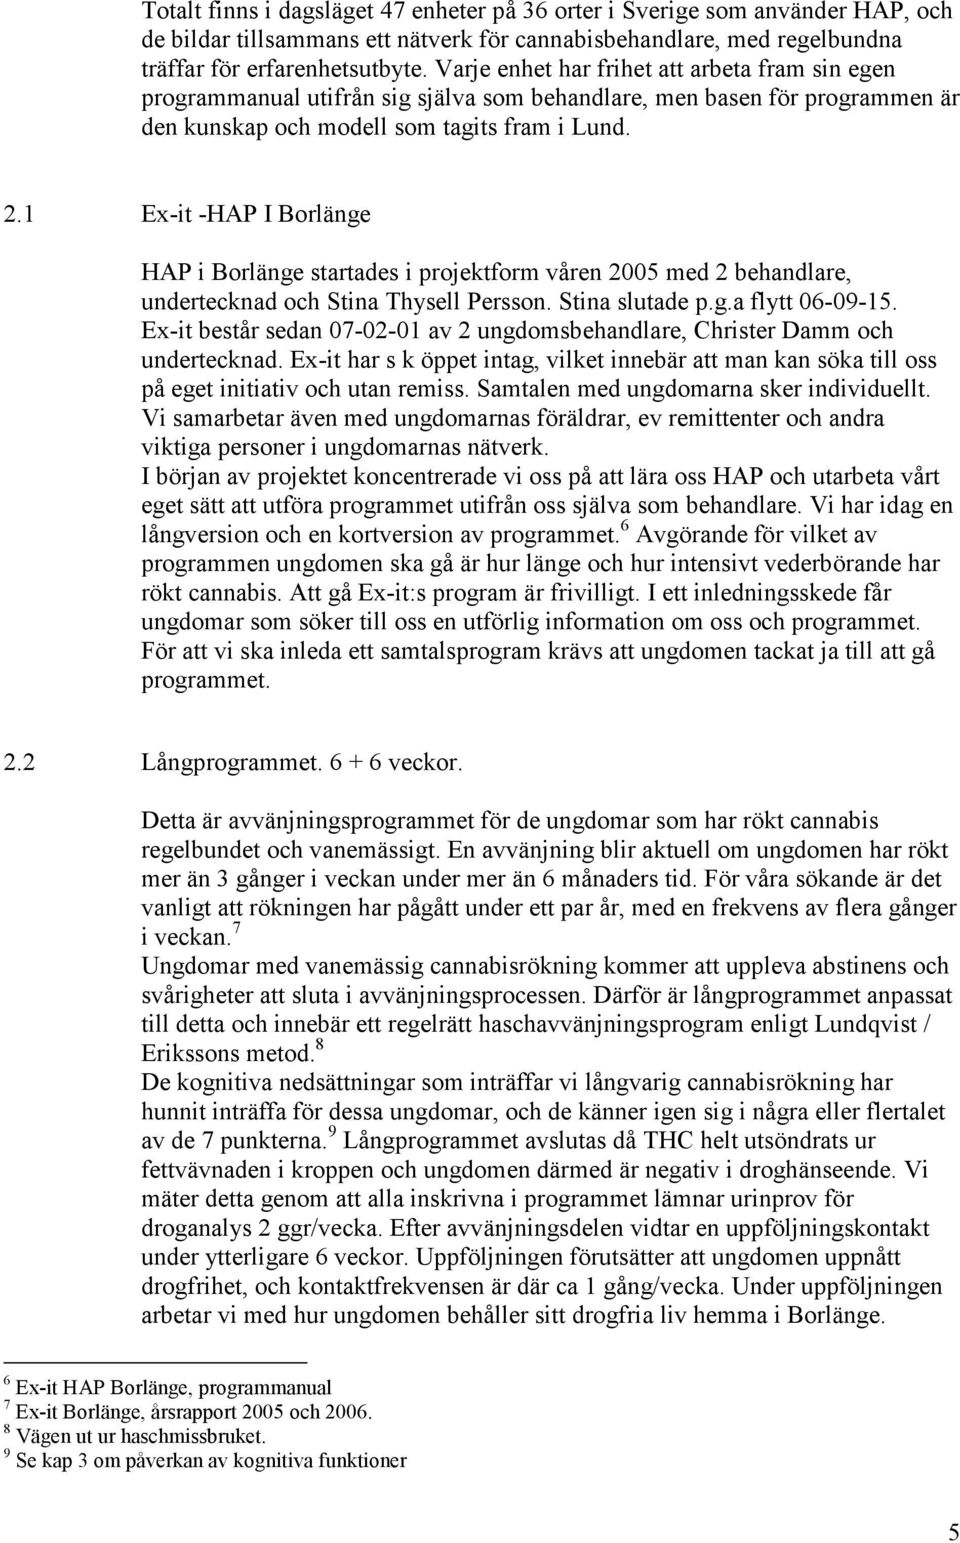 1 Ex-it -HAP I Borlänge HAP i Borlänge startades i projektform våren 2005 med 2 behandlare, undertecknad och Stina Thysell Persson. Stina slutade p.g.a flytt 06-09-15.